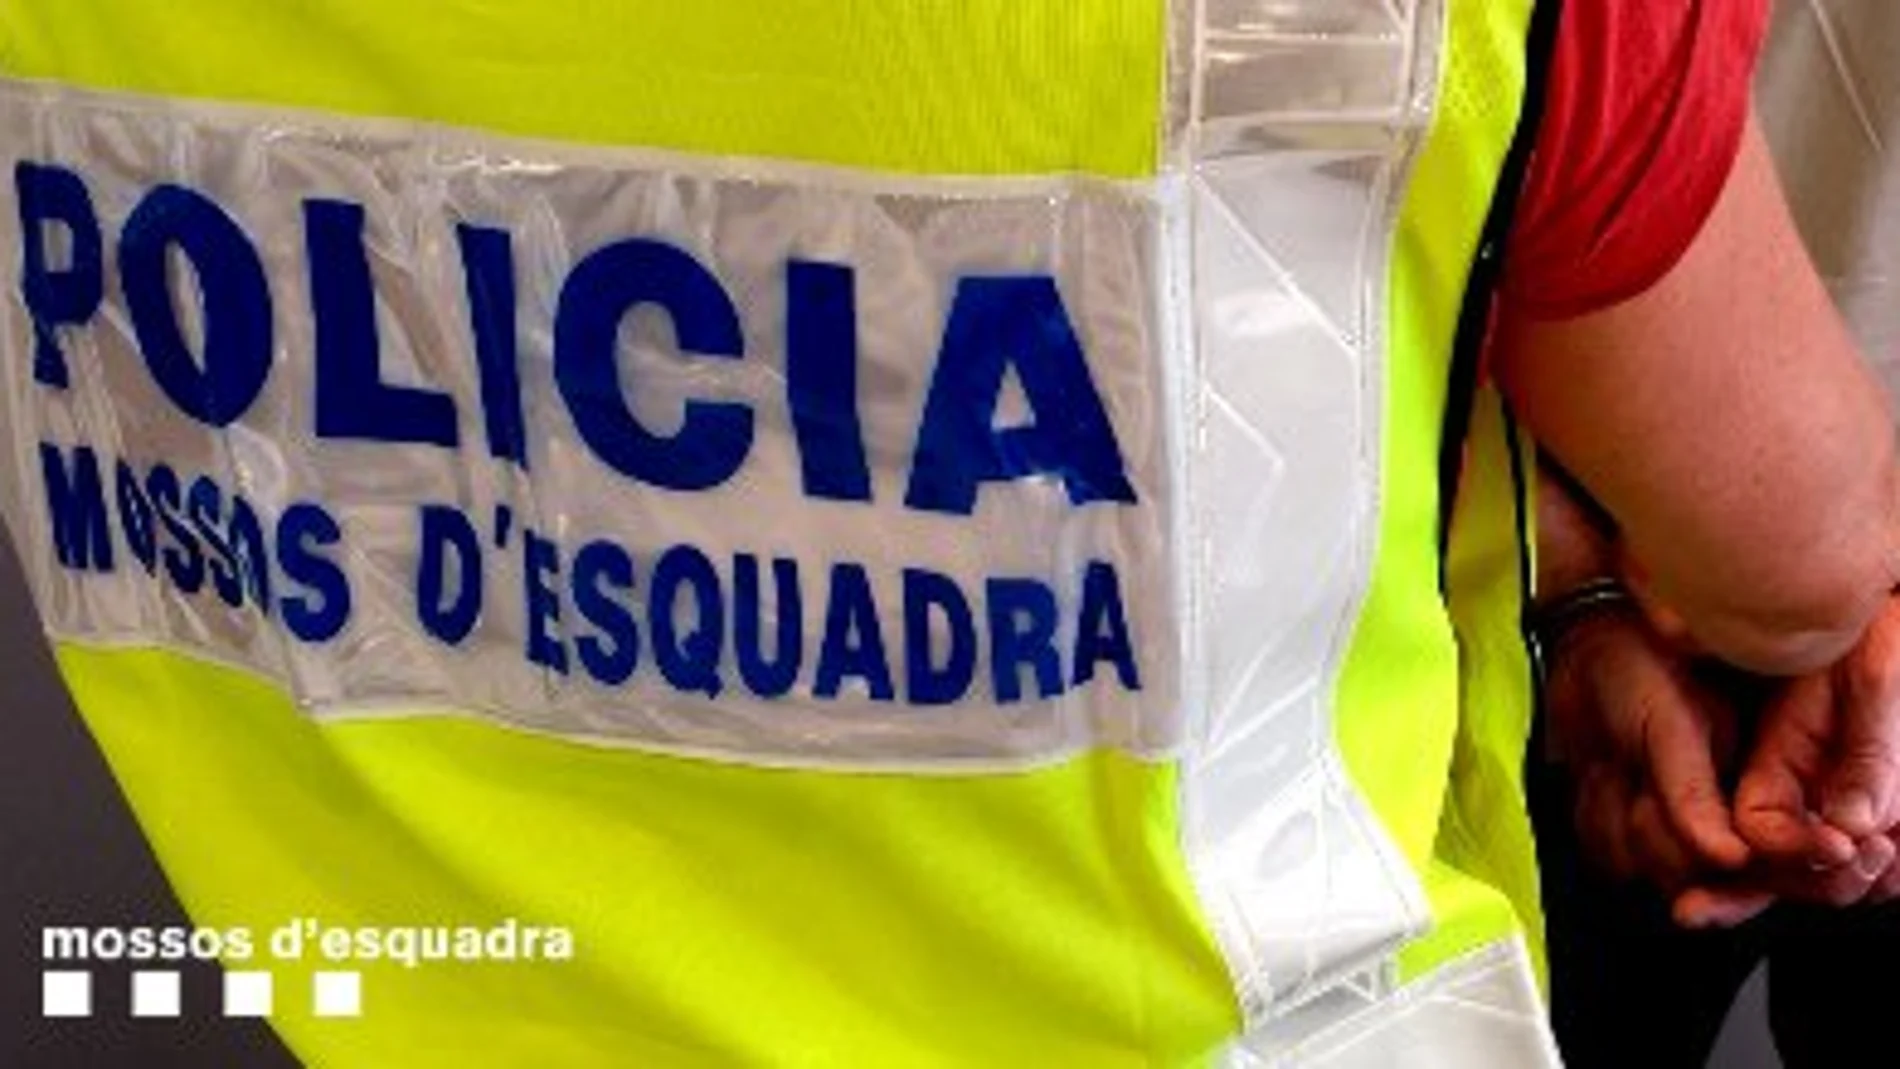 Detenido un joven de 15 años por agredir sexualmente a una niña de 13 años en Barcelona